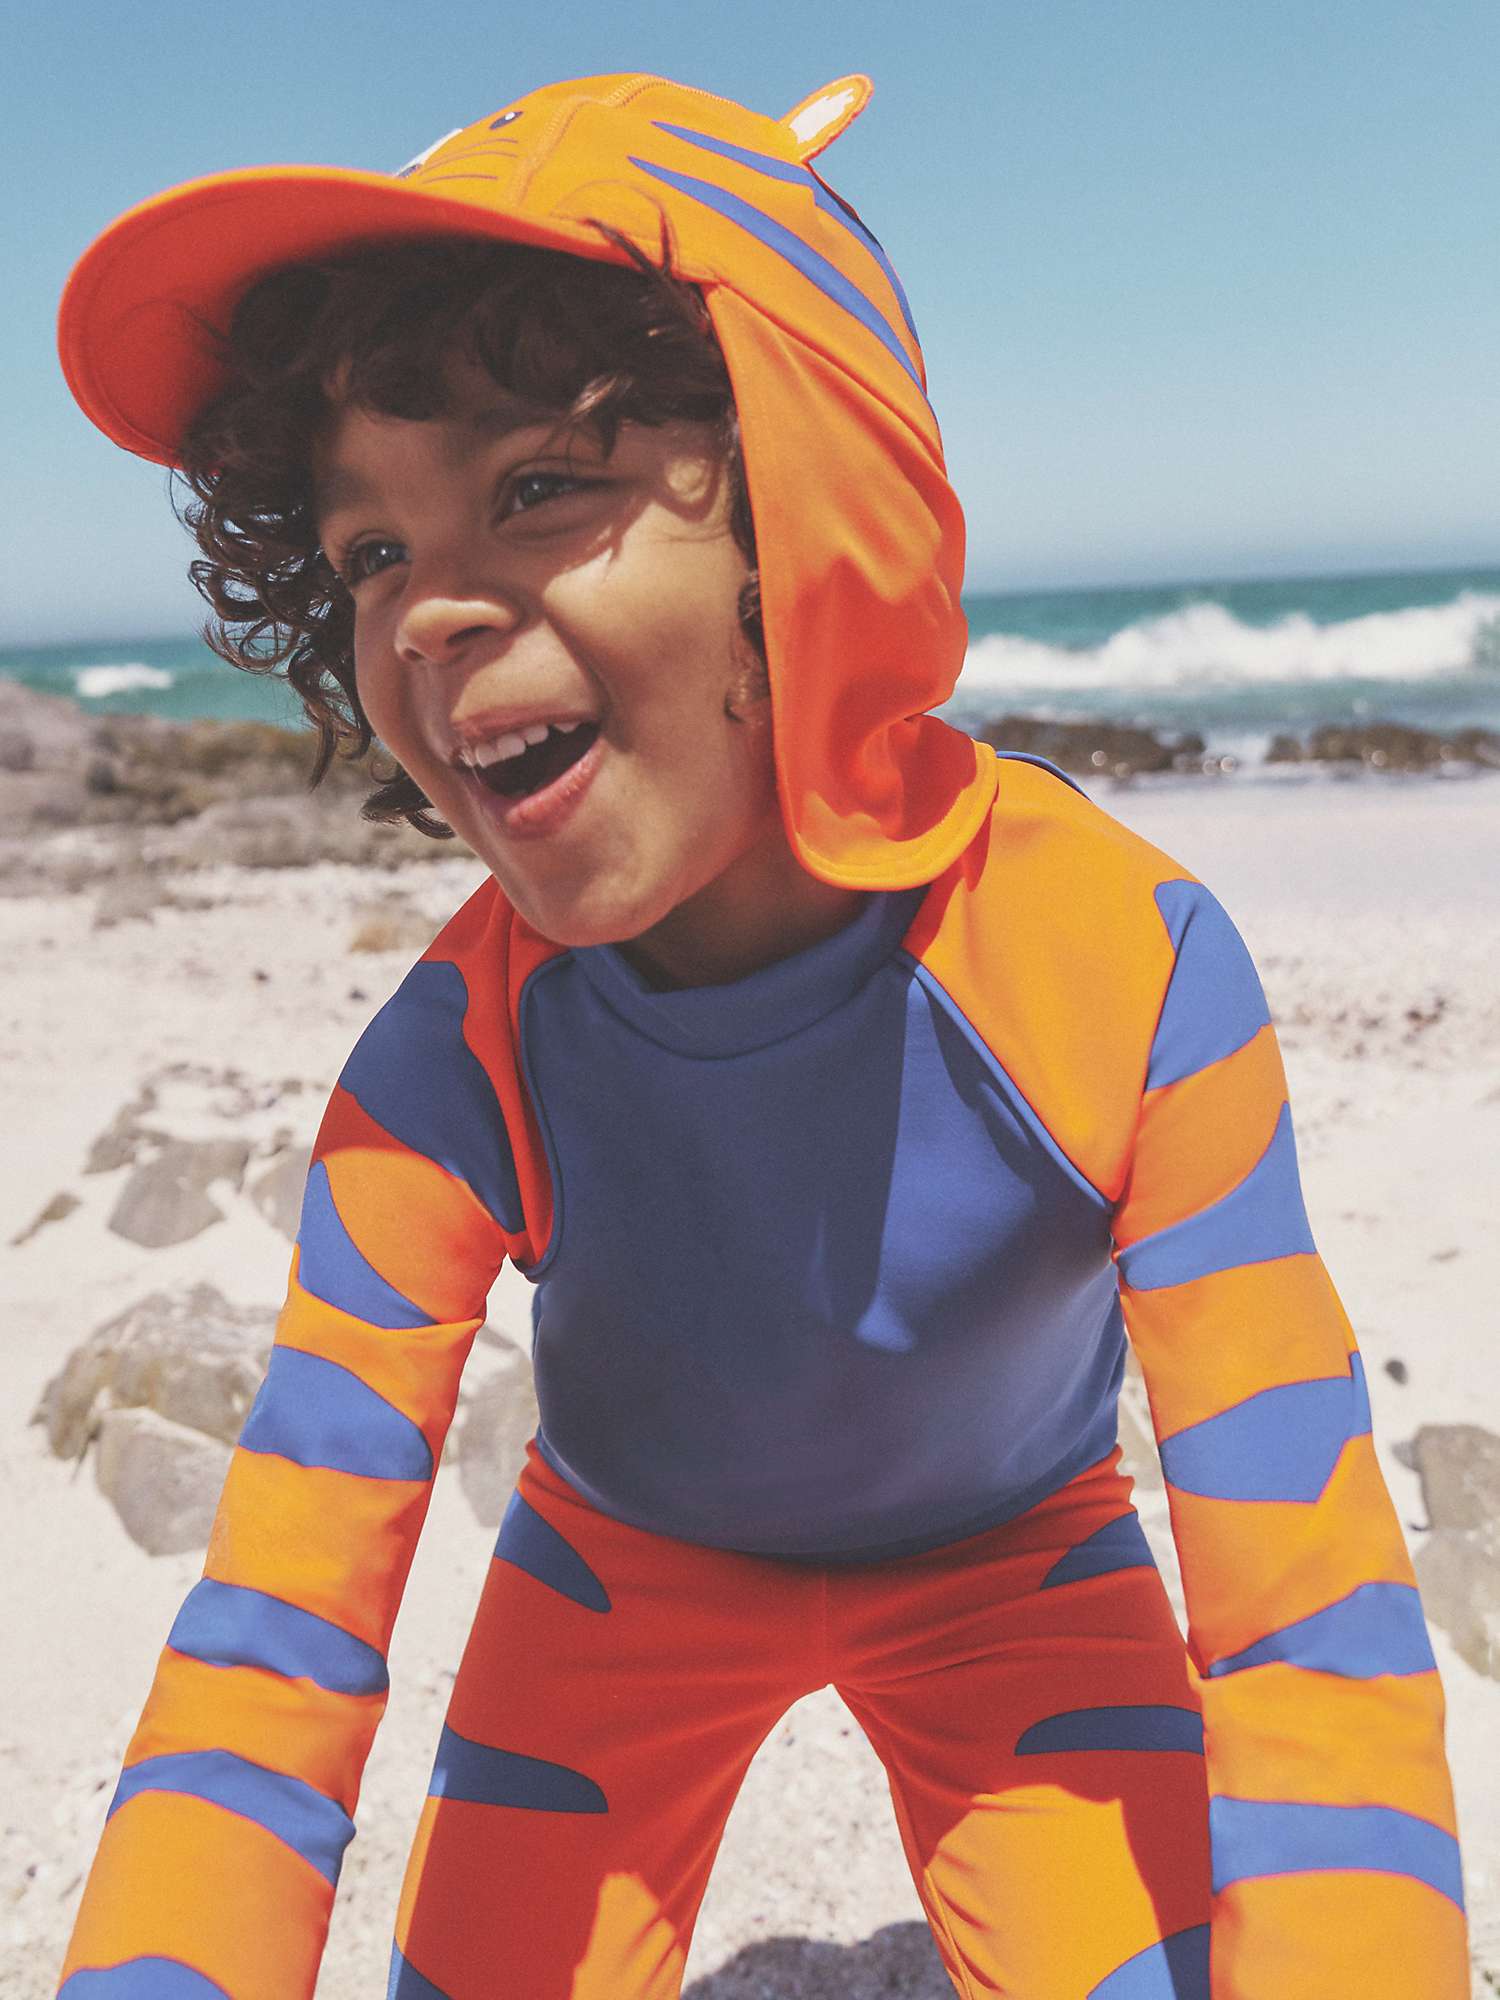 Buy Mini Boden Kids' Sun Safe Tiger Stripe Surf Set, Blue/Mandarin Orange Online at johnlewis.com